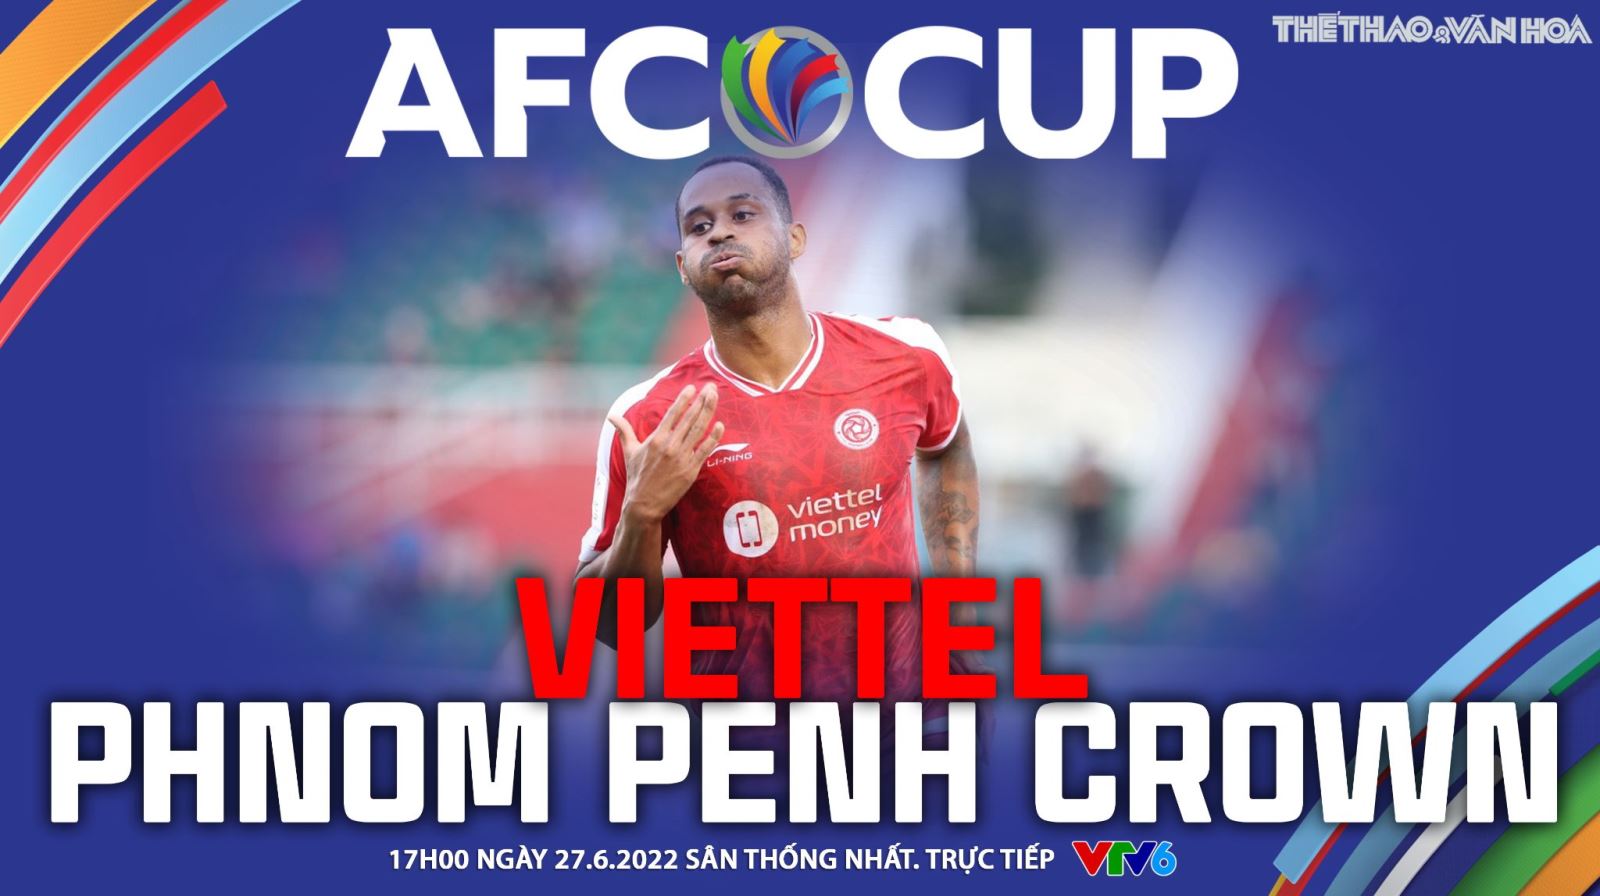 Soi Kèo Nhà Cái Viettel Vs Phnom Penh Crown. Nhận định, Dự đoán Bóng đá Afc Cup (17h00, 27/6) 62b7ced2a3a43.jpeg